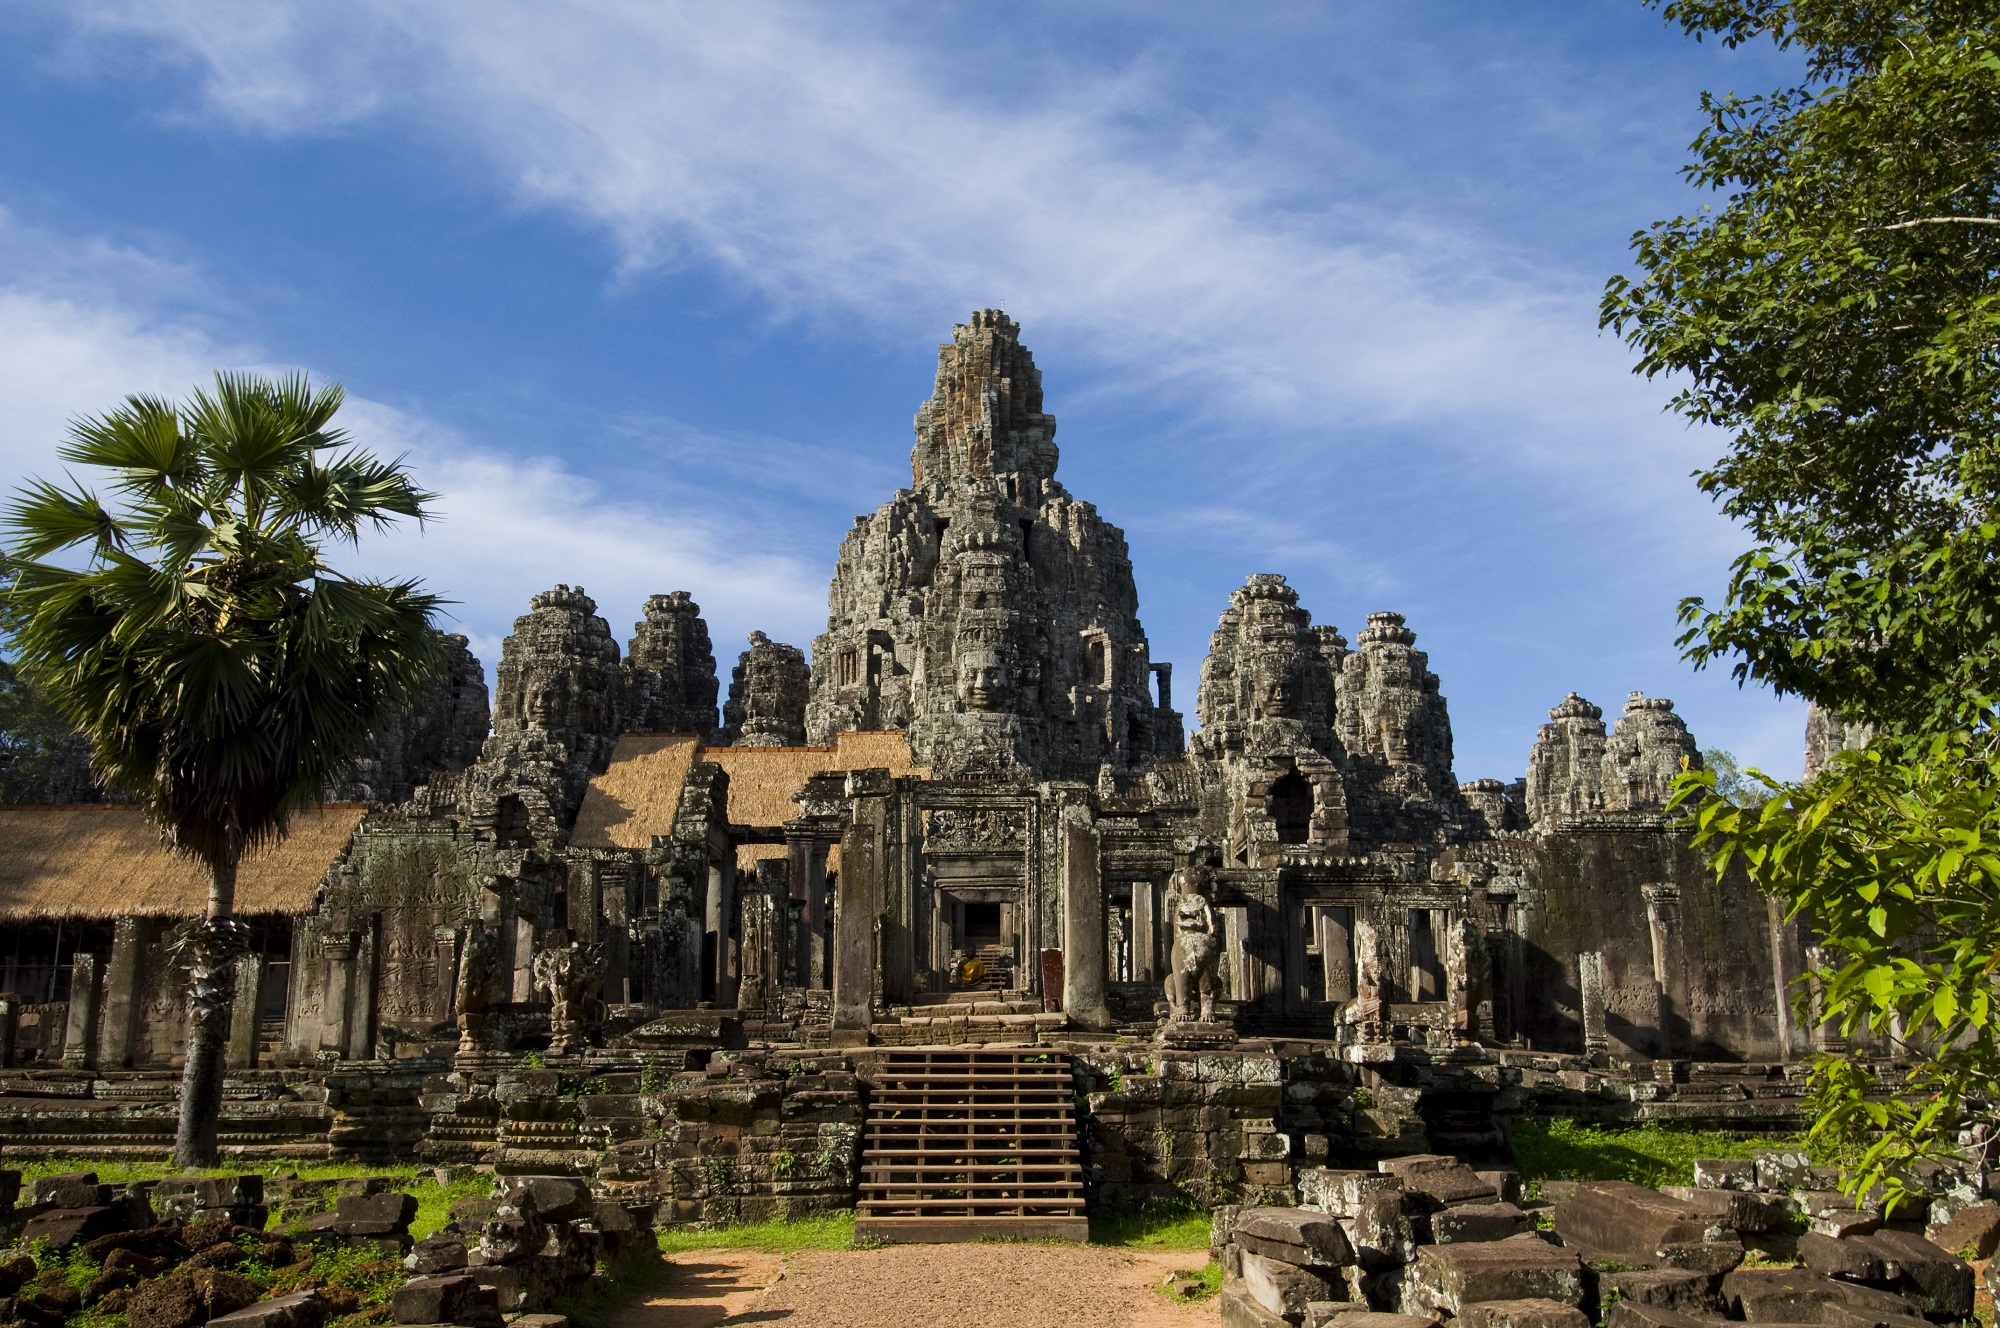 Храмовый комплекс со скульптурой золотого лотоса. Ангкор-Тхом Камбоджа. Камбоджа храм Ангкор Тхом. Ангкор ват и Ангкор Тхом. Храм Байон (древний город Ангкор-Тхом).